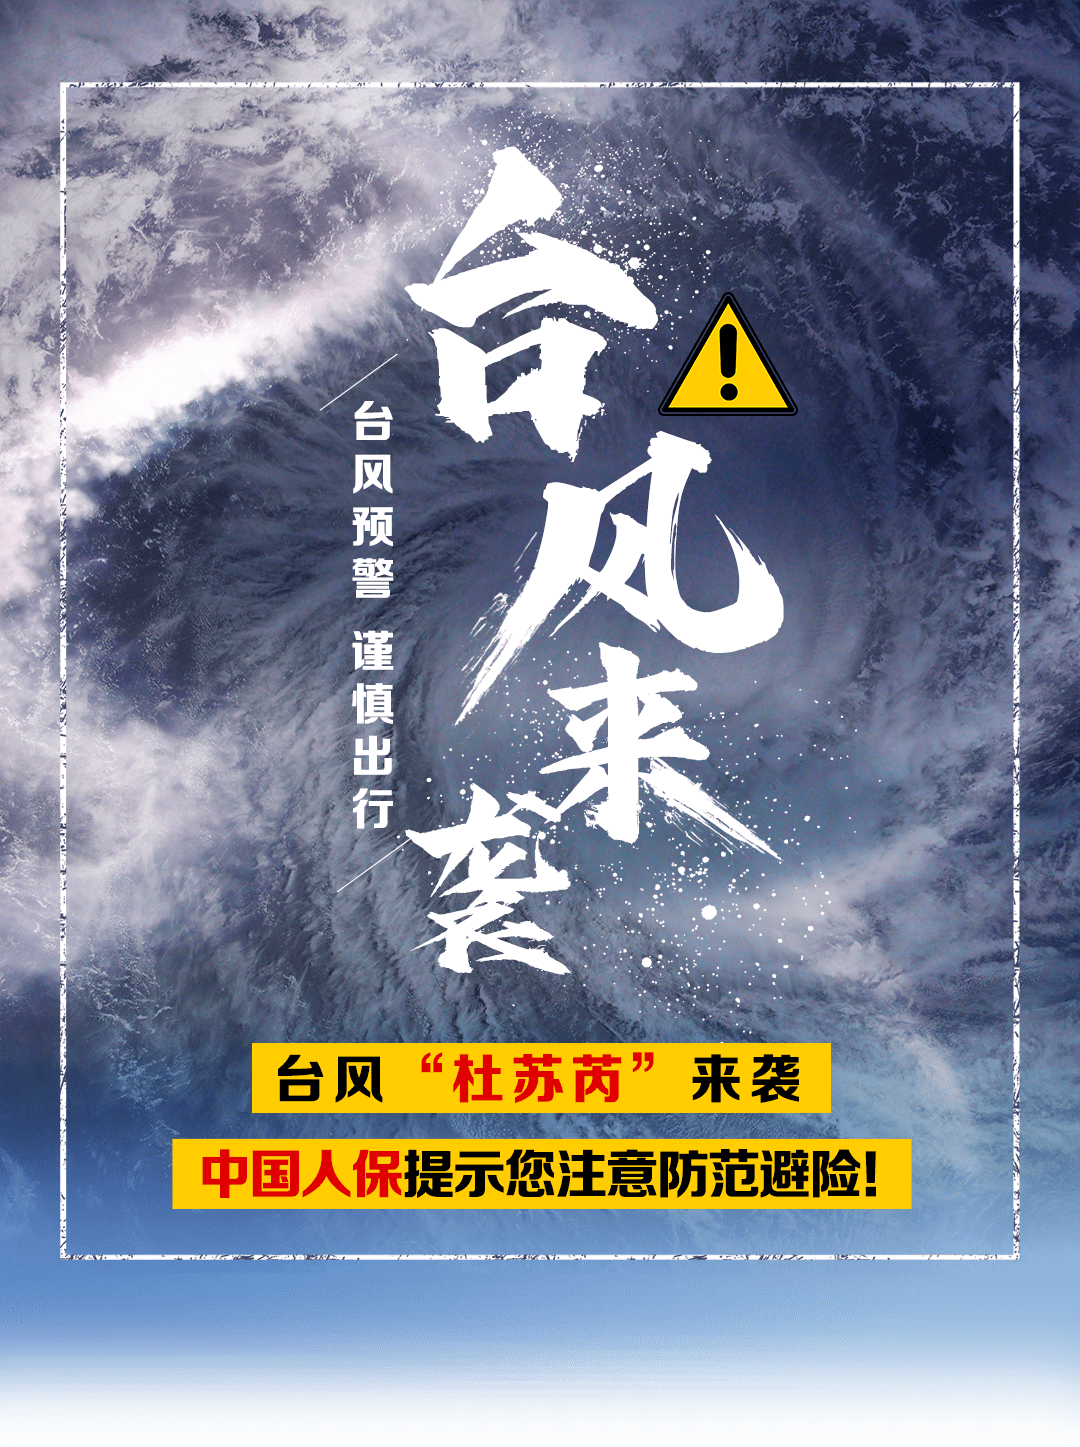 超强台风“杜苏芮”来势汹汹 中国发红色预警 – 亚洲电视新闻